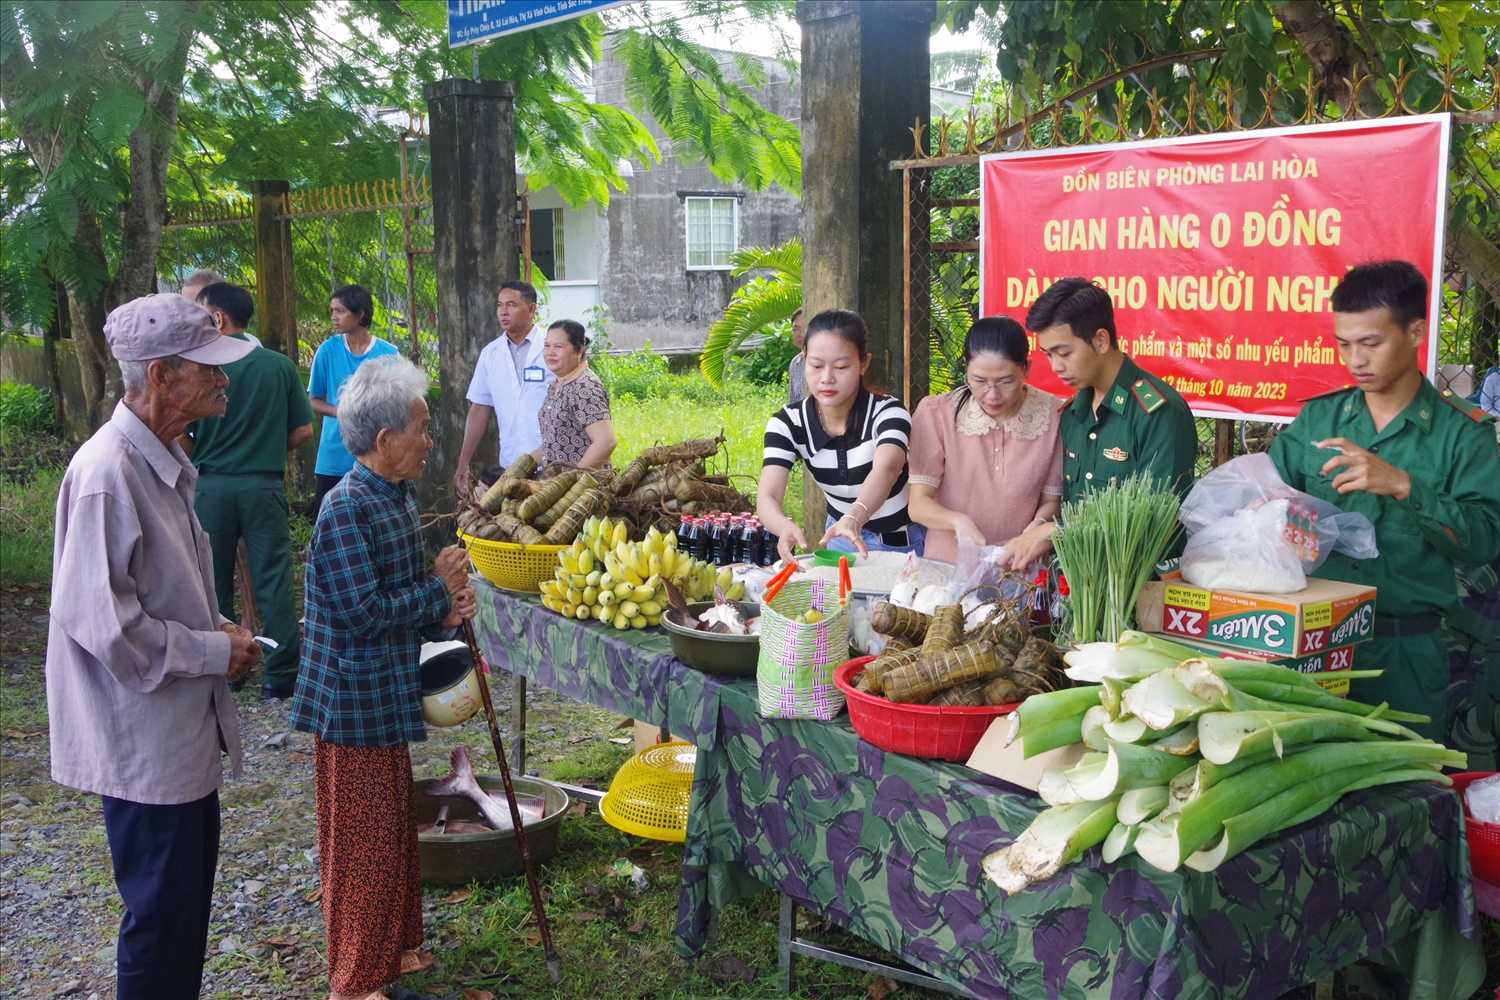 "Gian hàng 0 đồng" được Đồn Biên phòng Lai Hòa (BĐBP tỉnh Sóc Trăng) xây dựng nhằm hỗ trợ bà con Khmer có hoàn cảnh khó khăn có thêm nhu yếu phẩm trong mùa Sen Dolta 